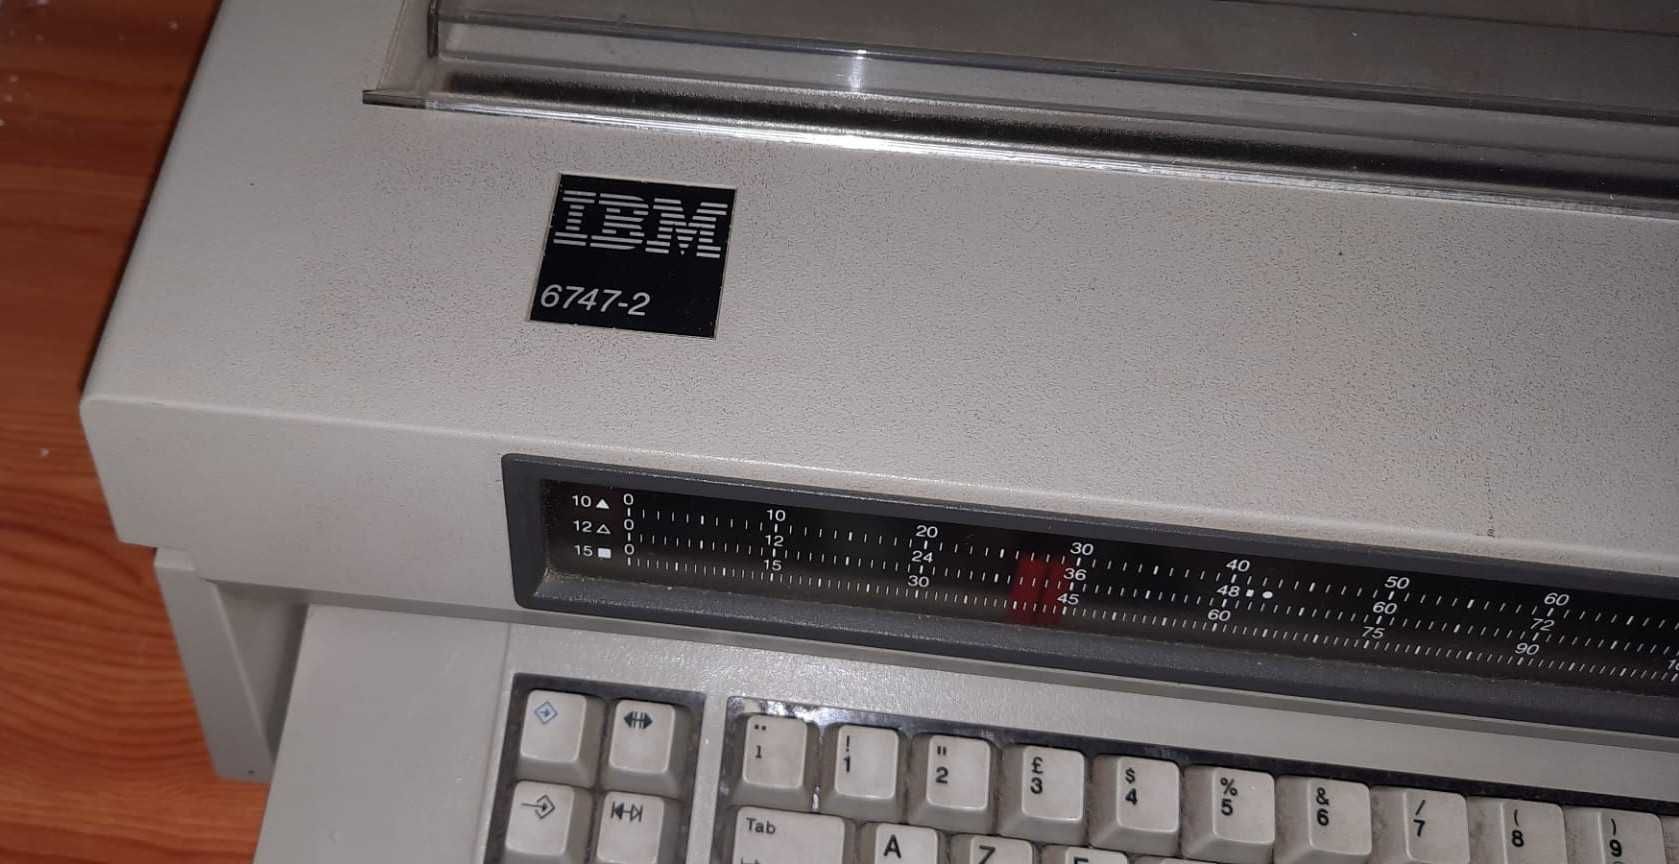 Máquina de escrever IBM, modelo 6747-2